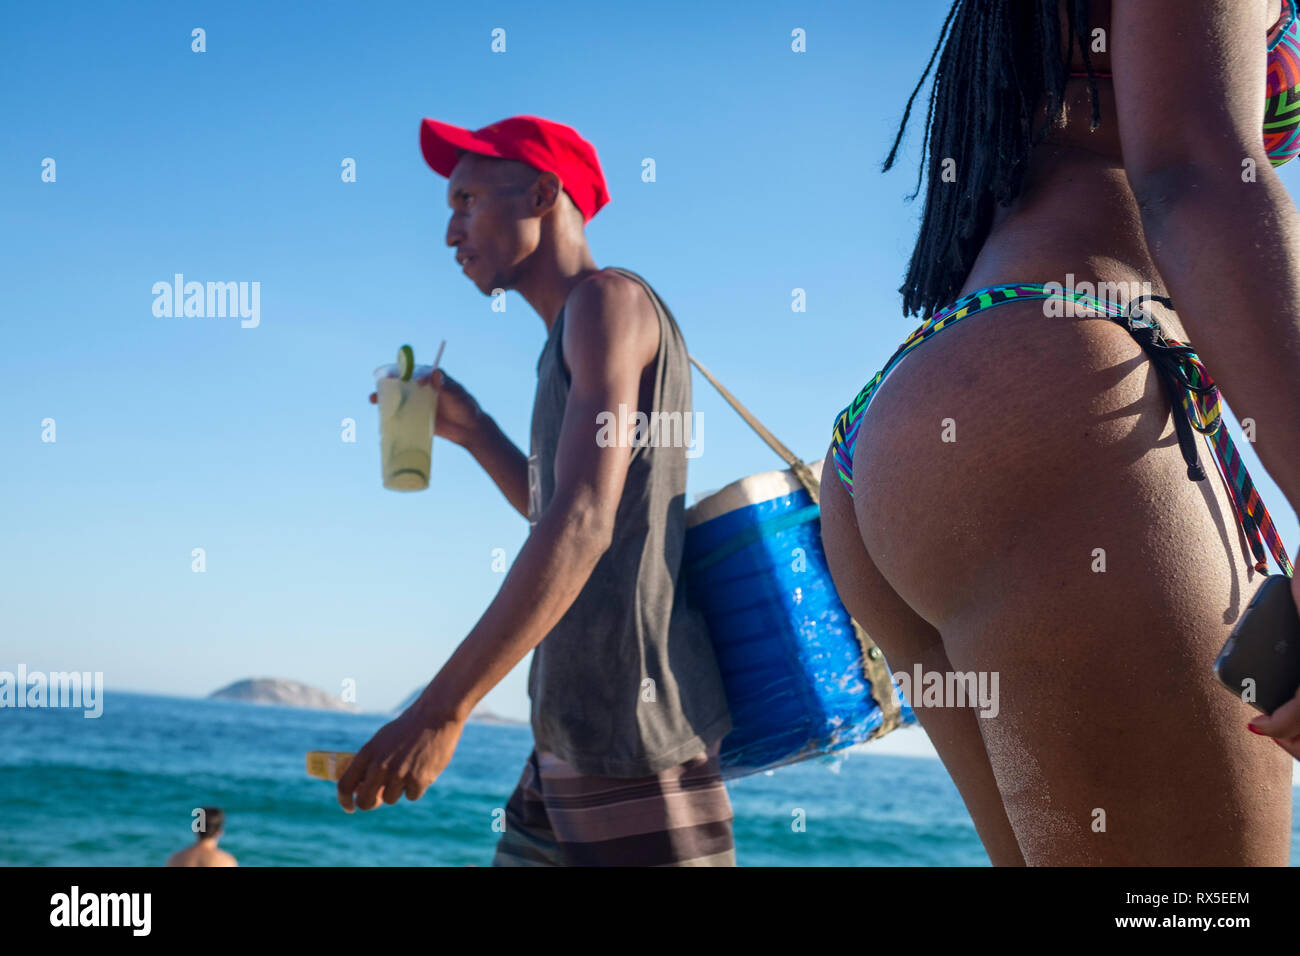 RIO DE JANEIRO - FEBRUARY 5, 2017: A beach vendor drinks a caipirinha cocktail as he passes a beachgoers in bikinis on the shore of Ipanema Beach. Stock Photo